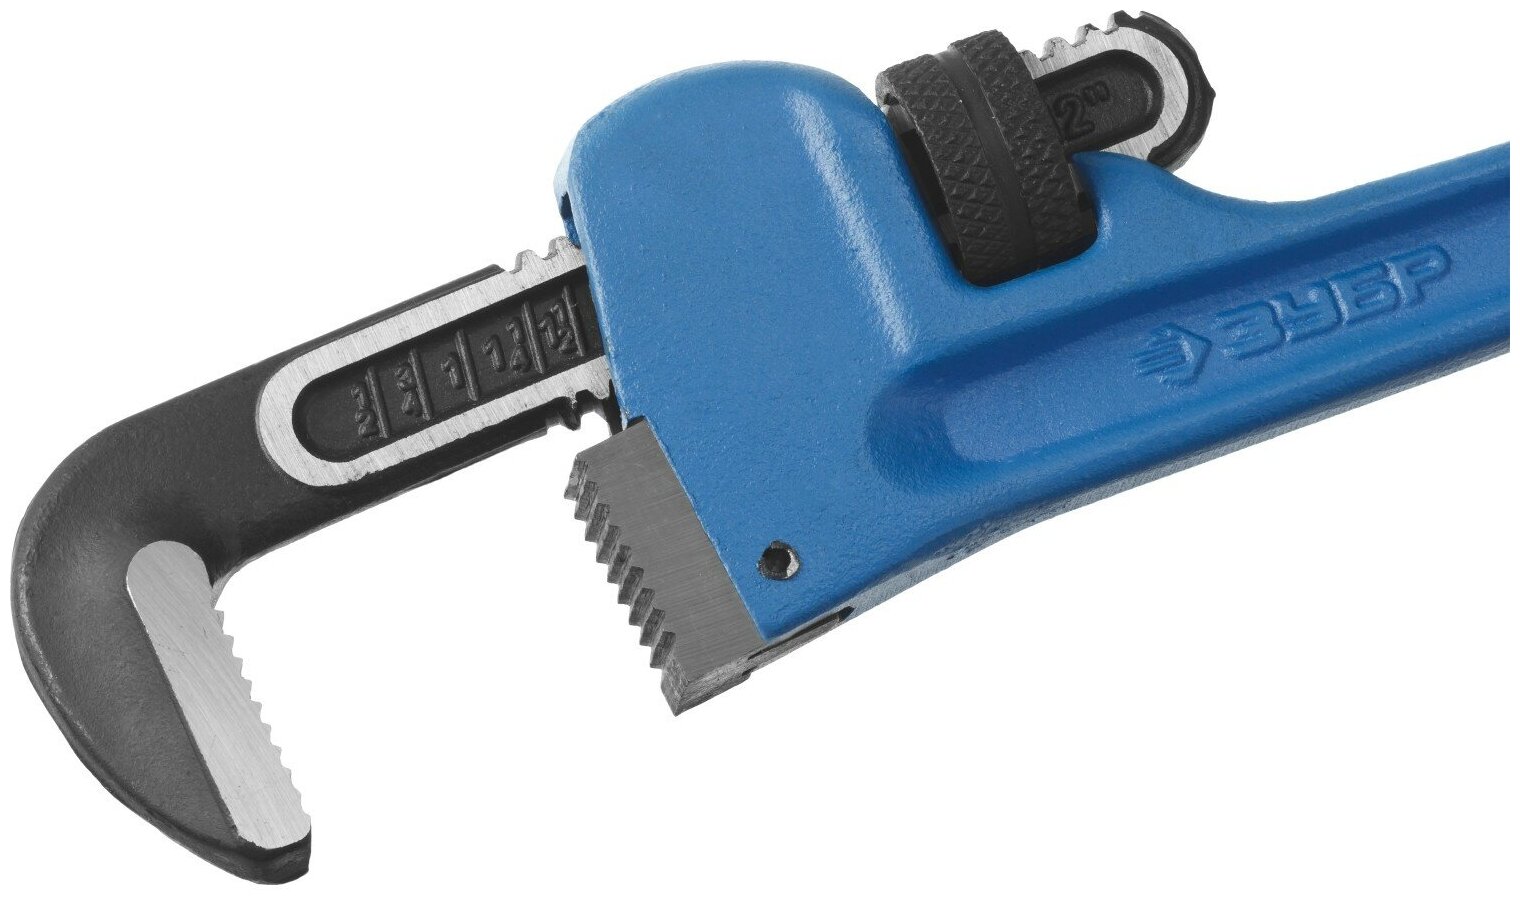 ЗУБР стиллсон, 1.5″, 300 мм, Трубный разводной ключ, Профессионал (27339-1)